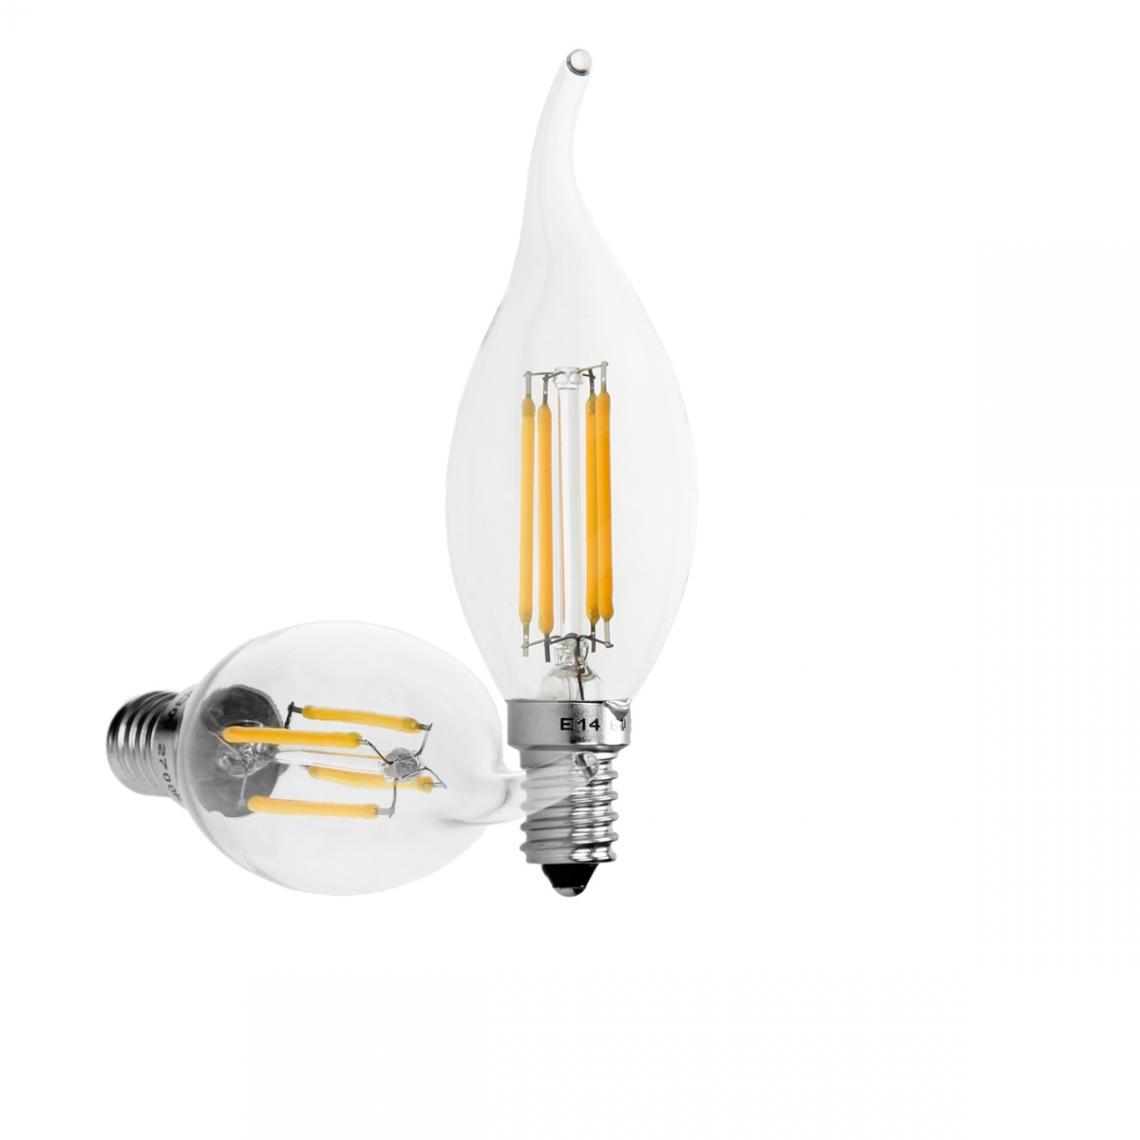 Ecd Germany - 6 x Lampe LED rafale de vent filament de bougie E14 4W blanc chaud - Ampoules LED